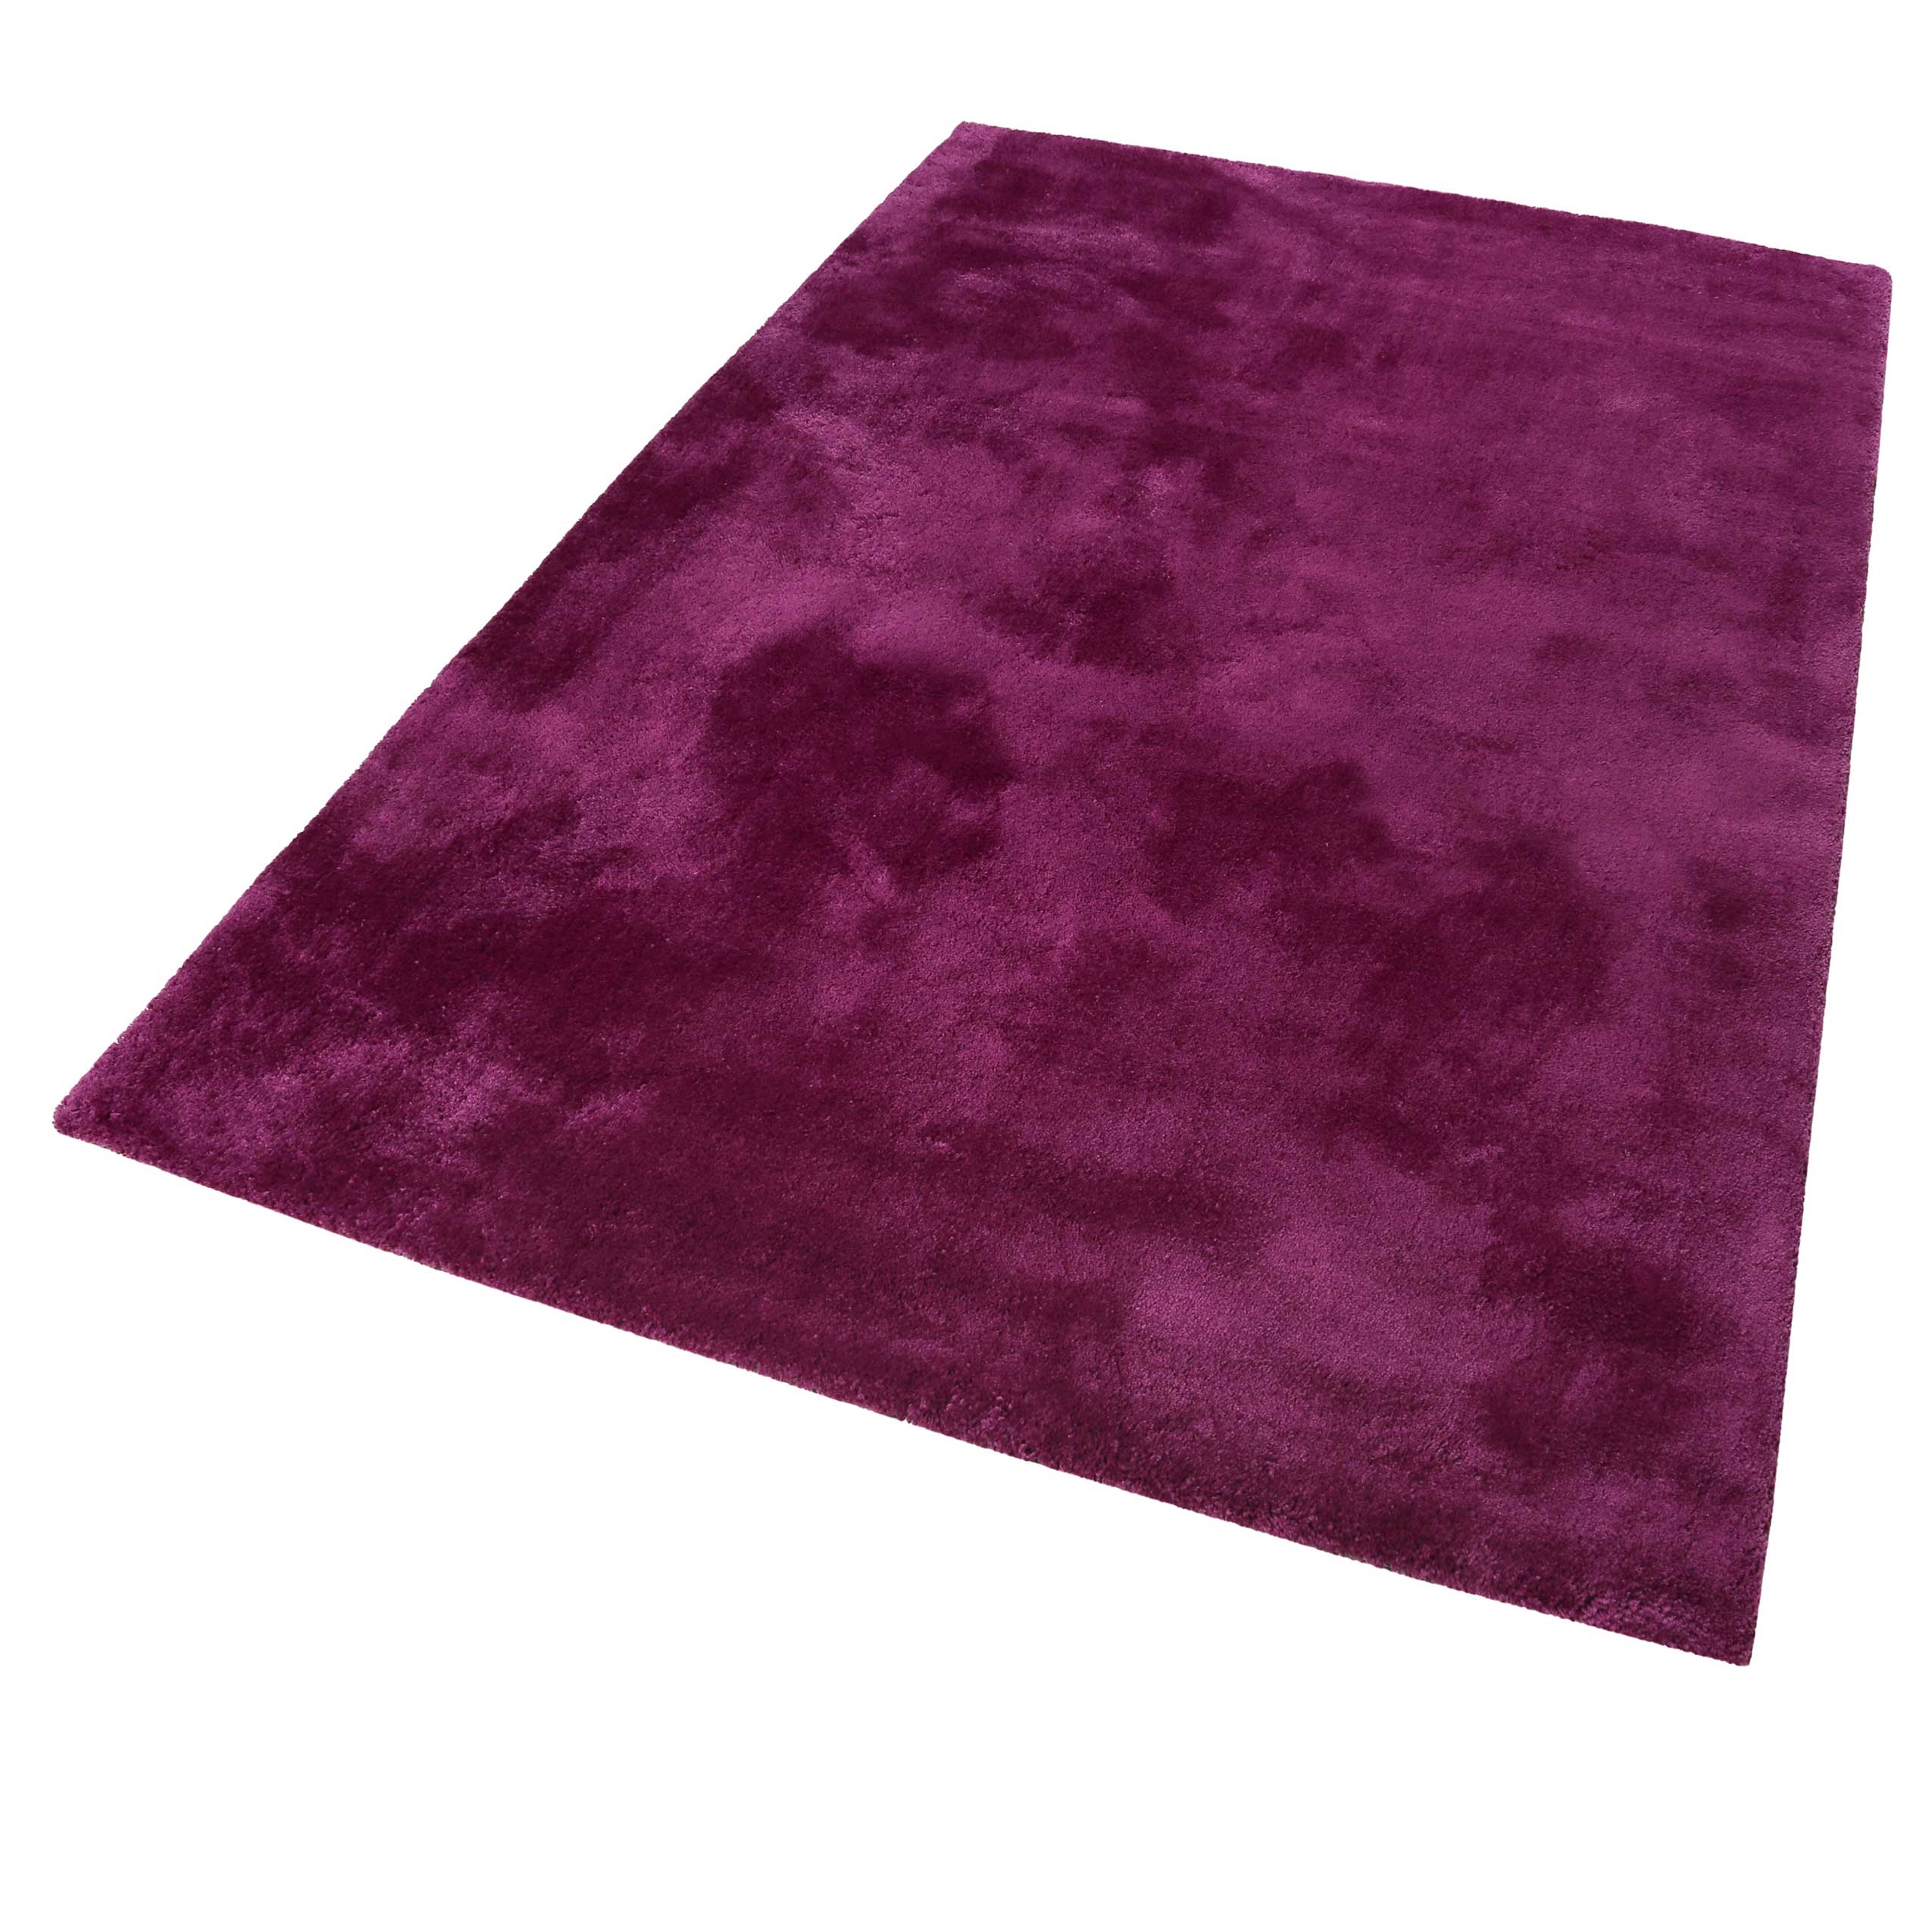 Esprit Teppich Pink Violett Hochflor » Relaxx « - Ansicht 3